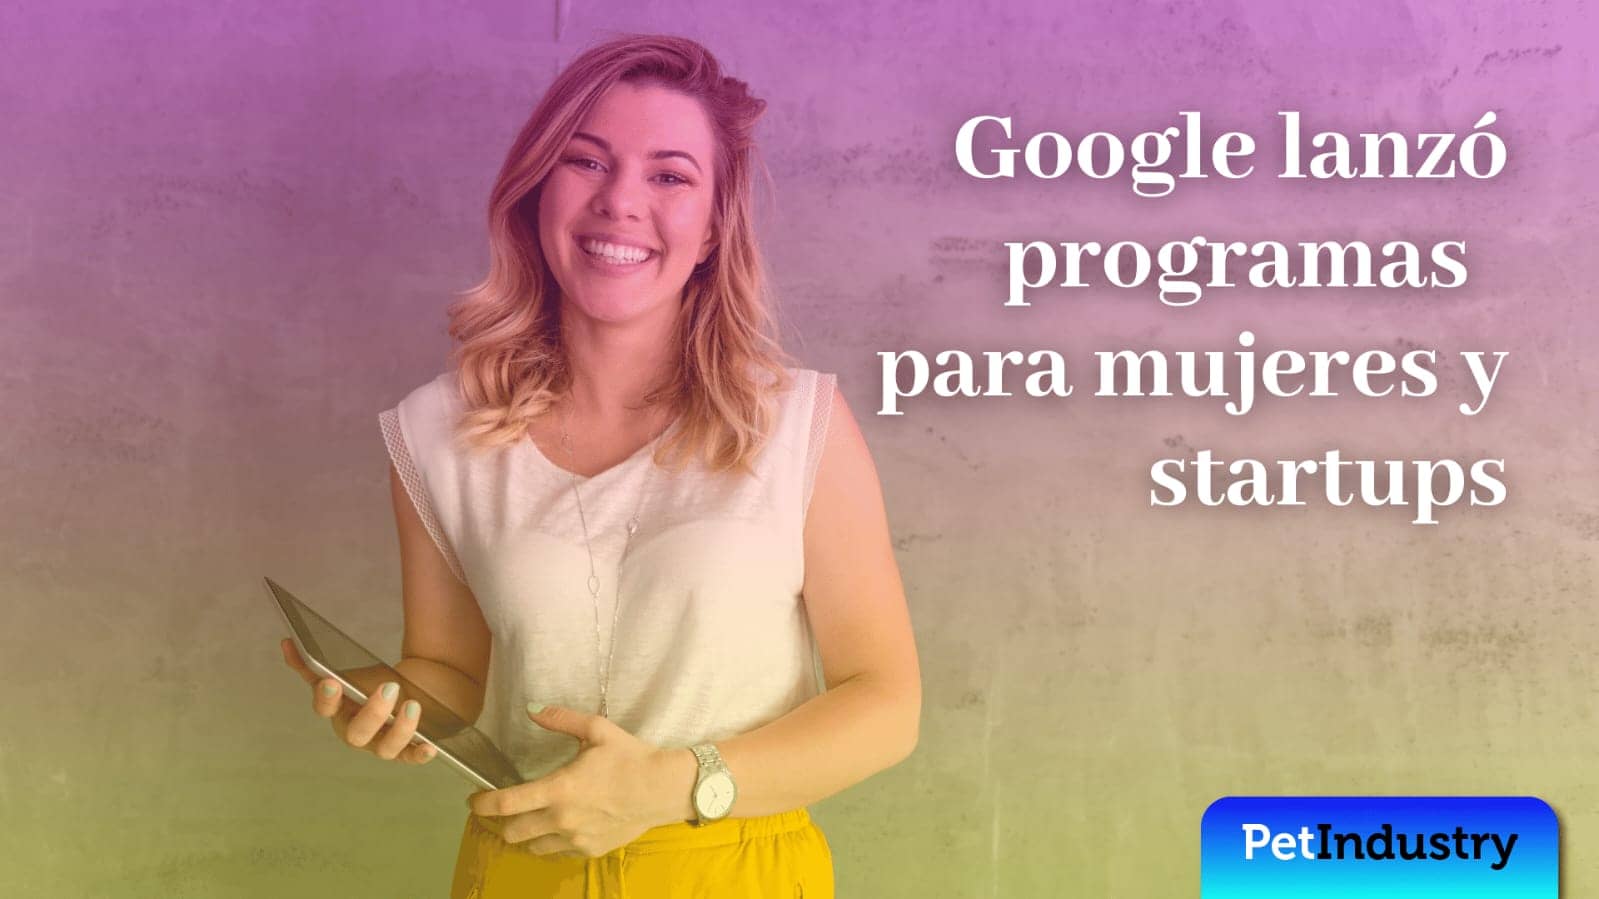  Google lanzó programas para mujeres y startups